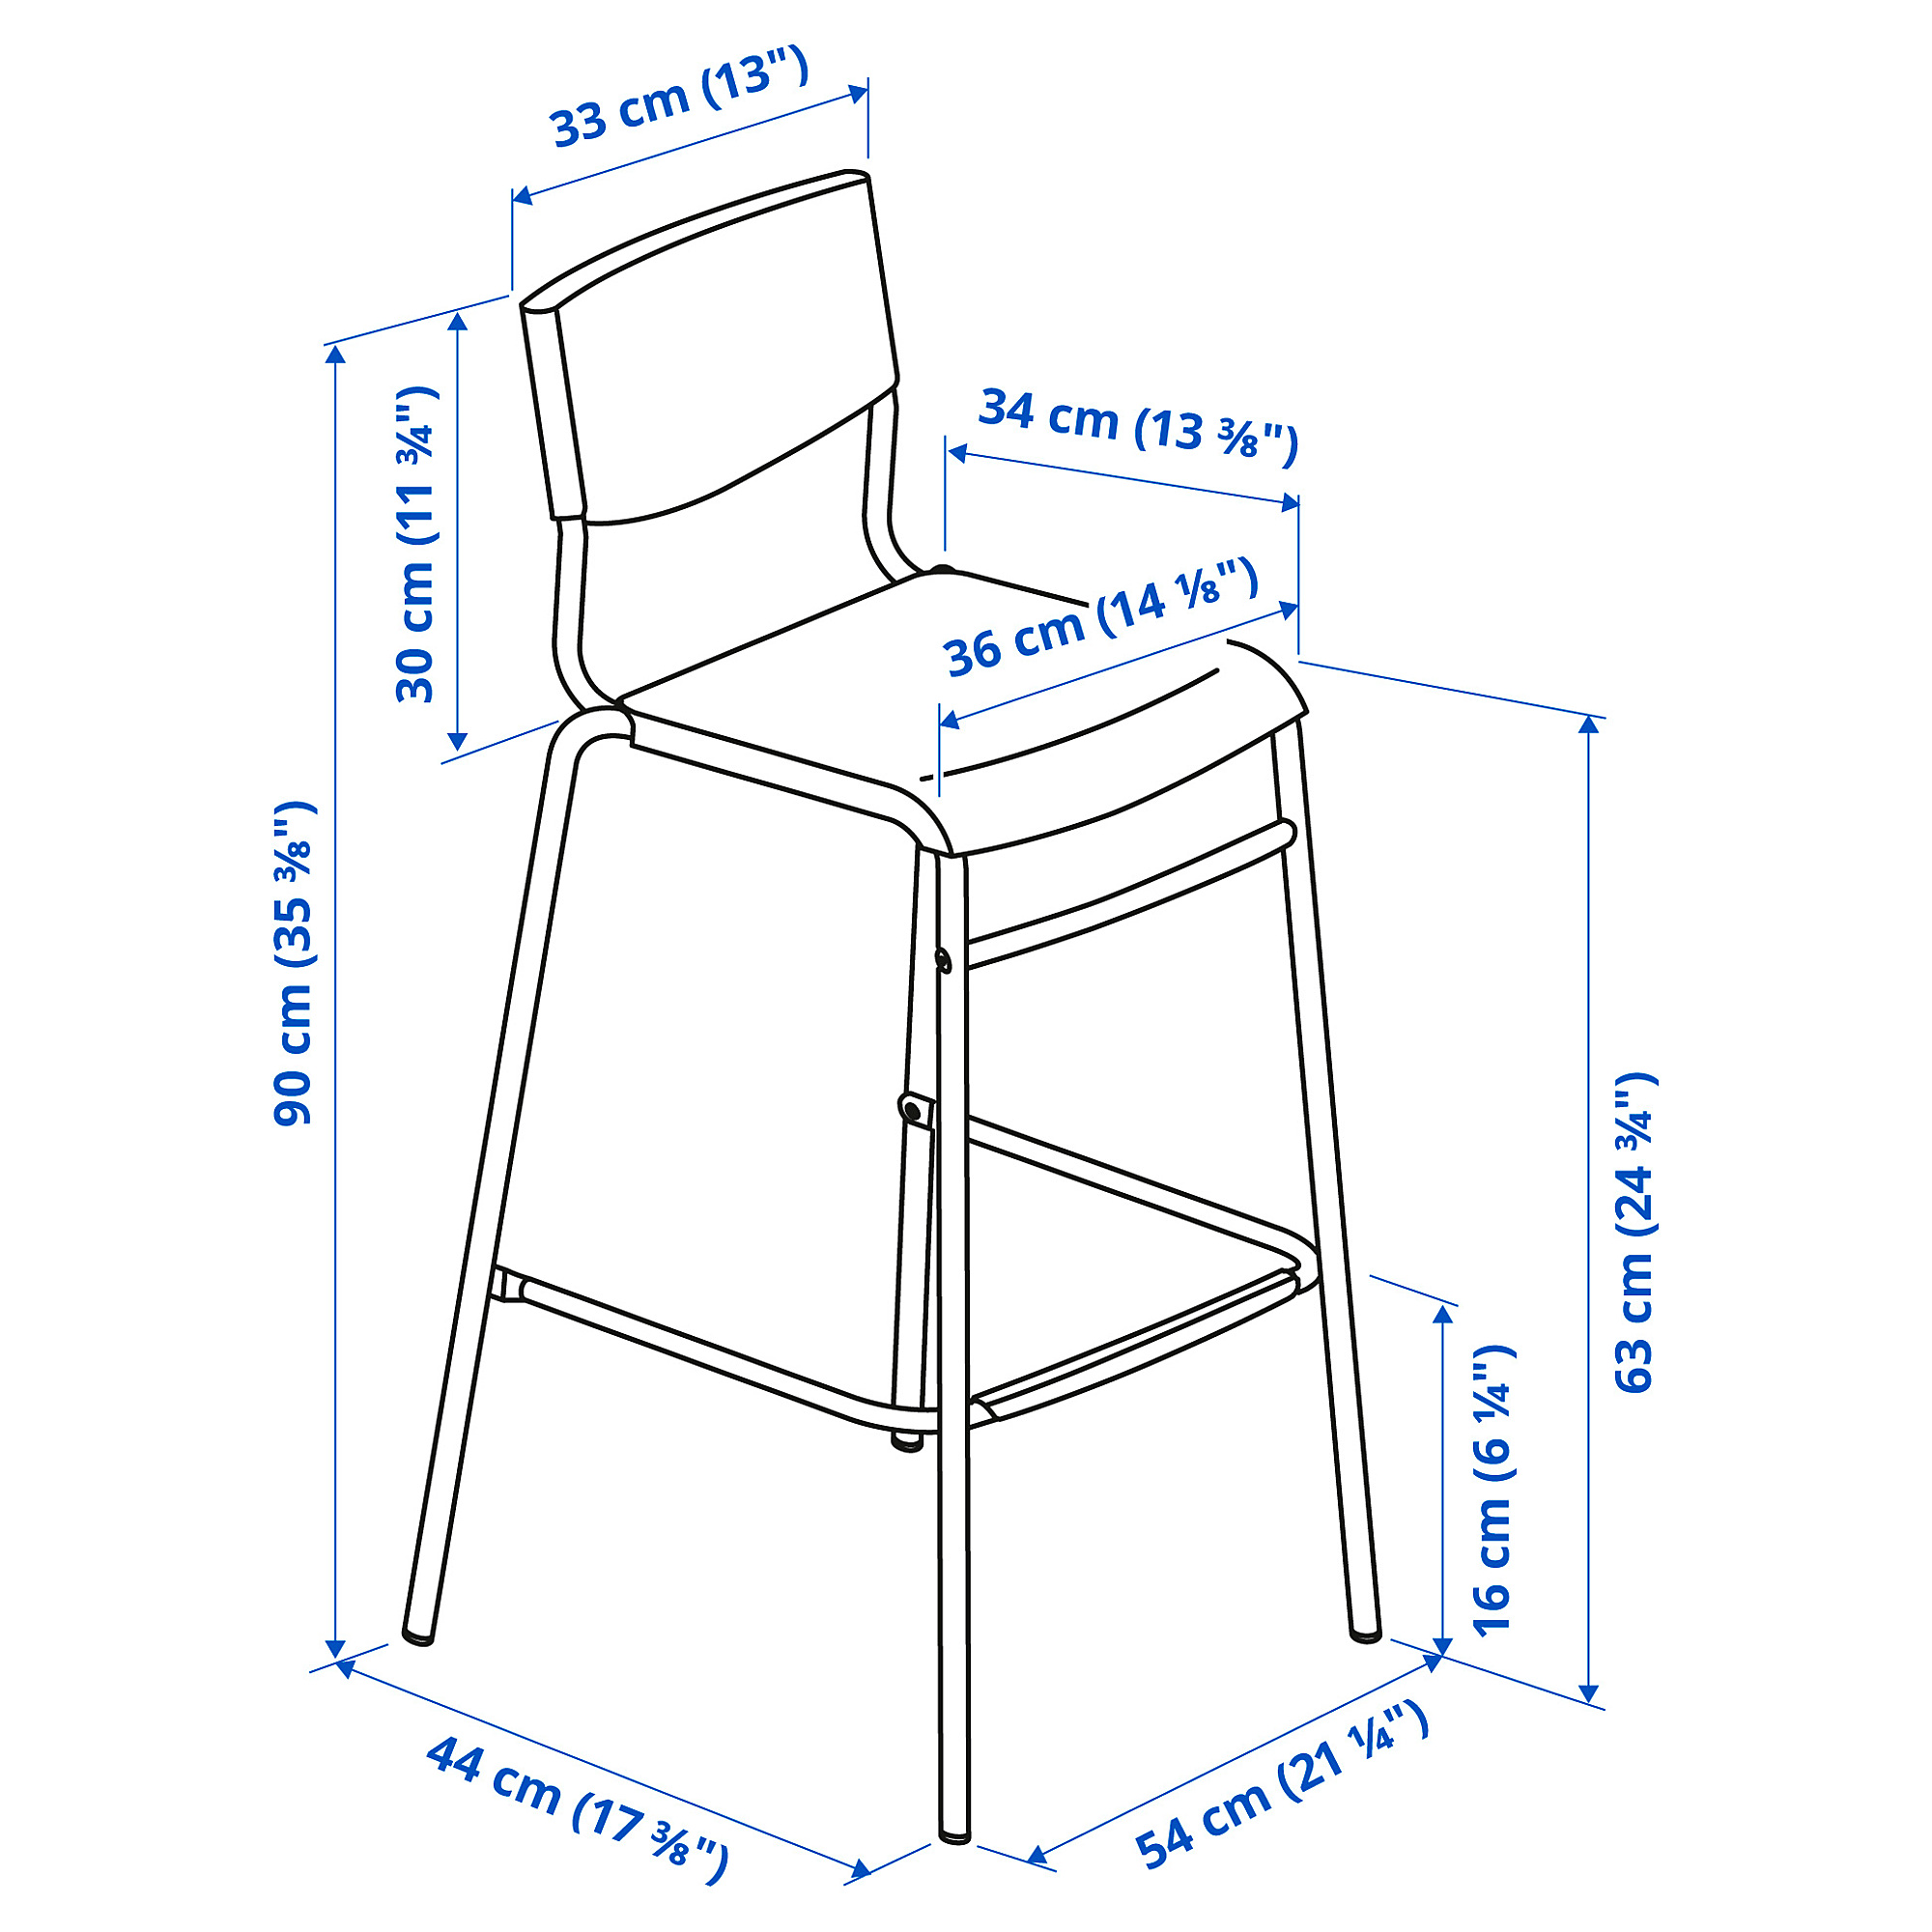 HÅVERUD/STIG table and 4 stools